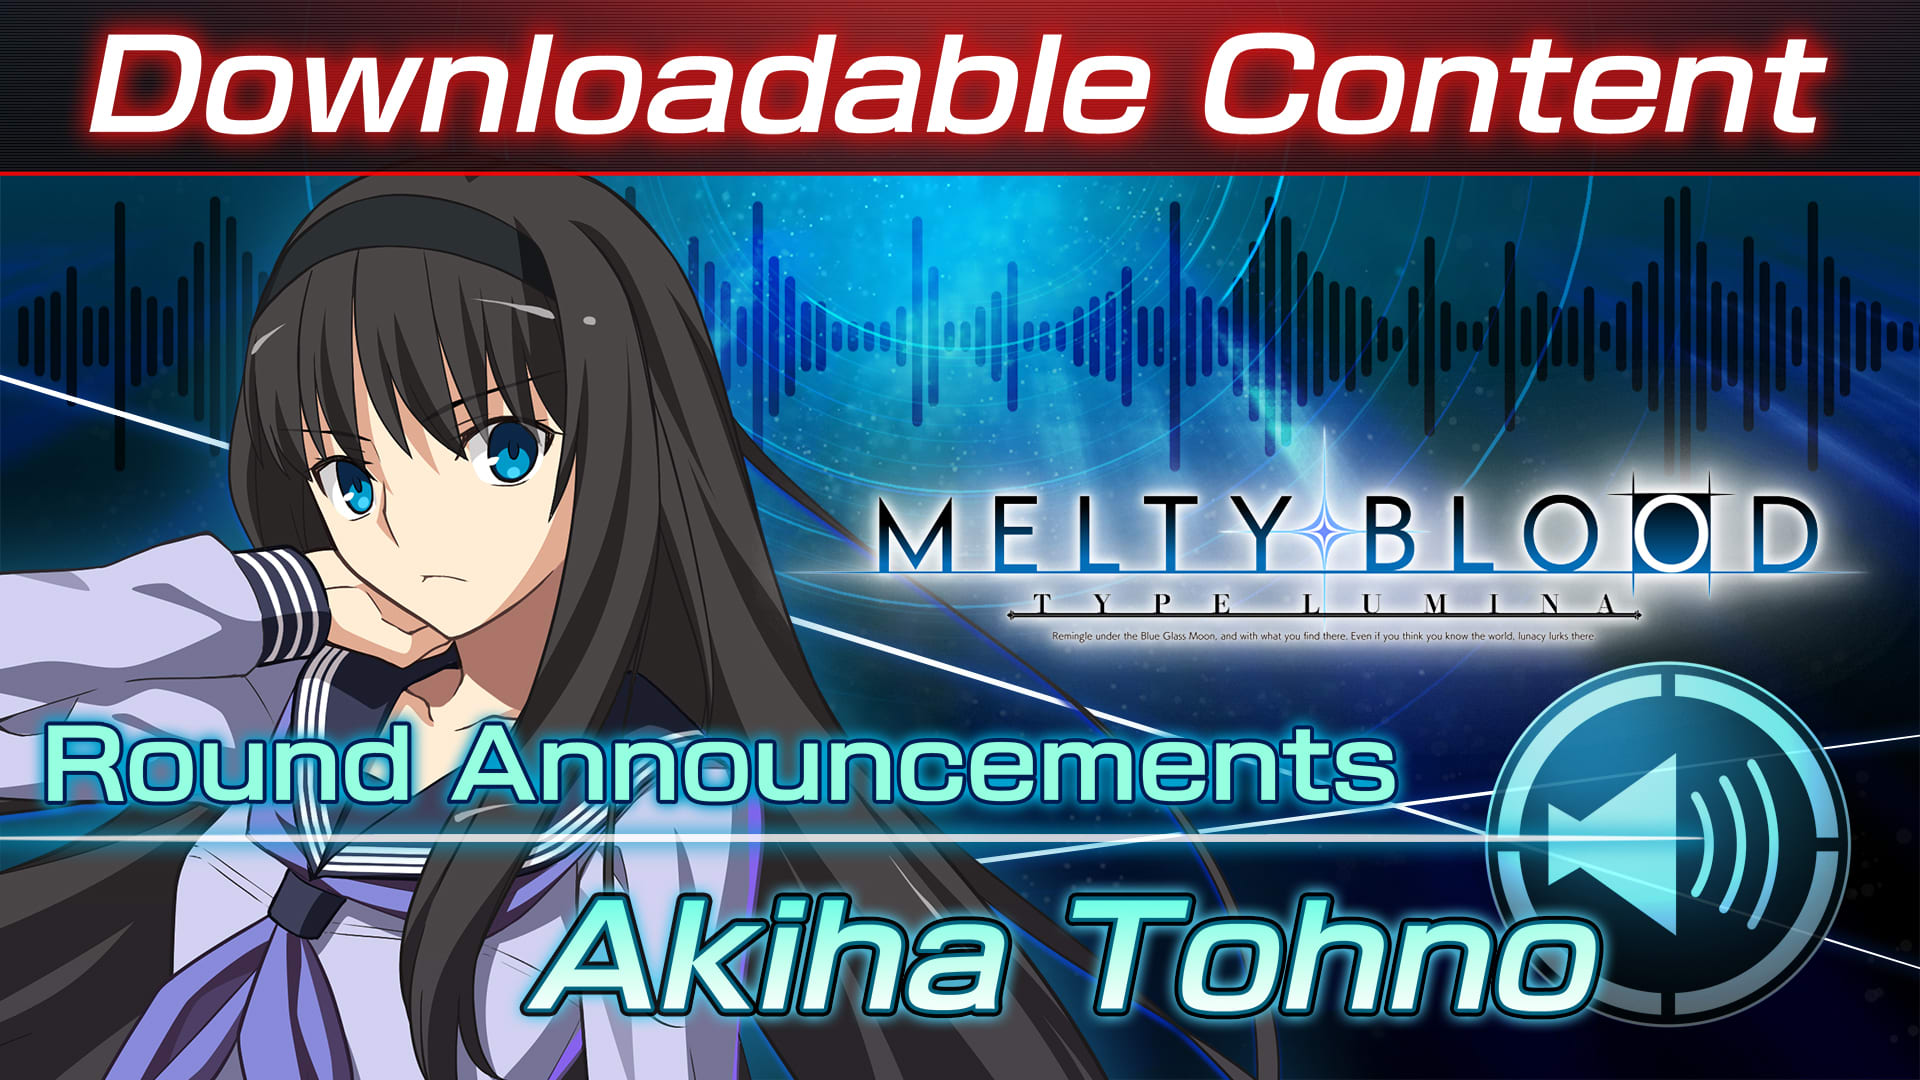 Contenido adicional: "Akiha Tohno Round Announcements"